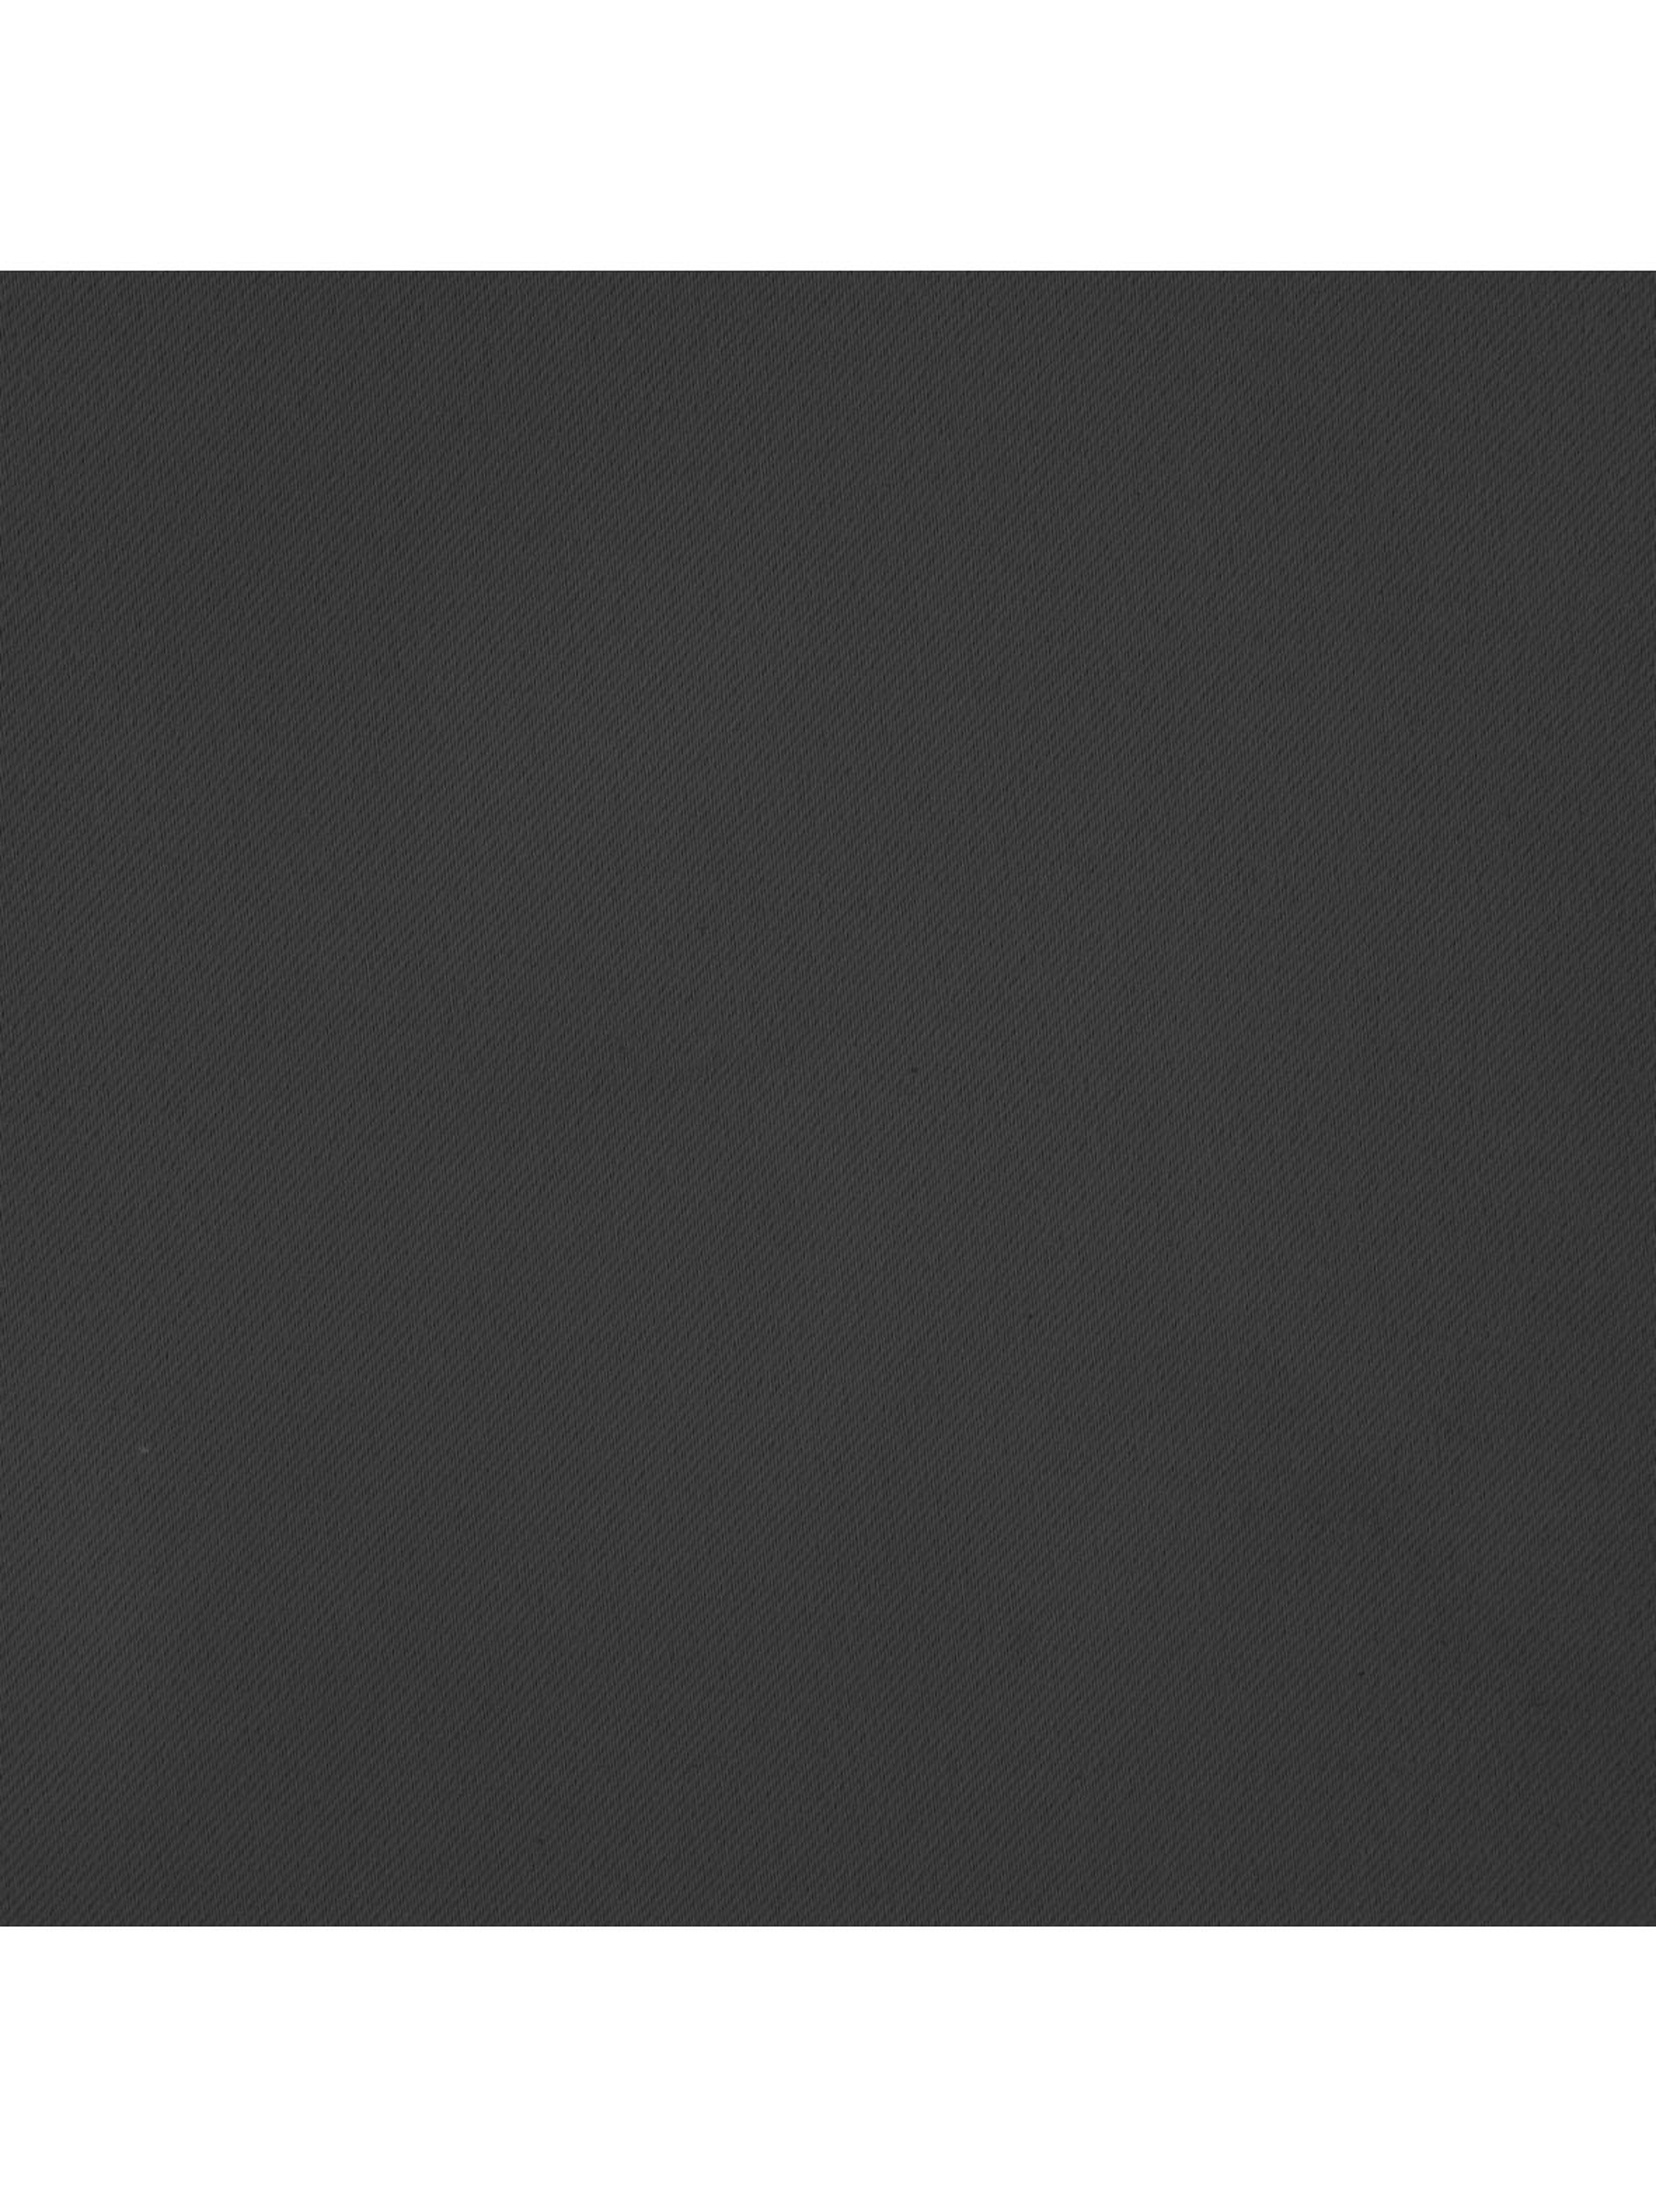 Zasłona jednokolorowa zaciemniająca - grafitowa - 135x270cm